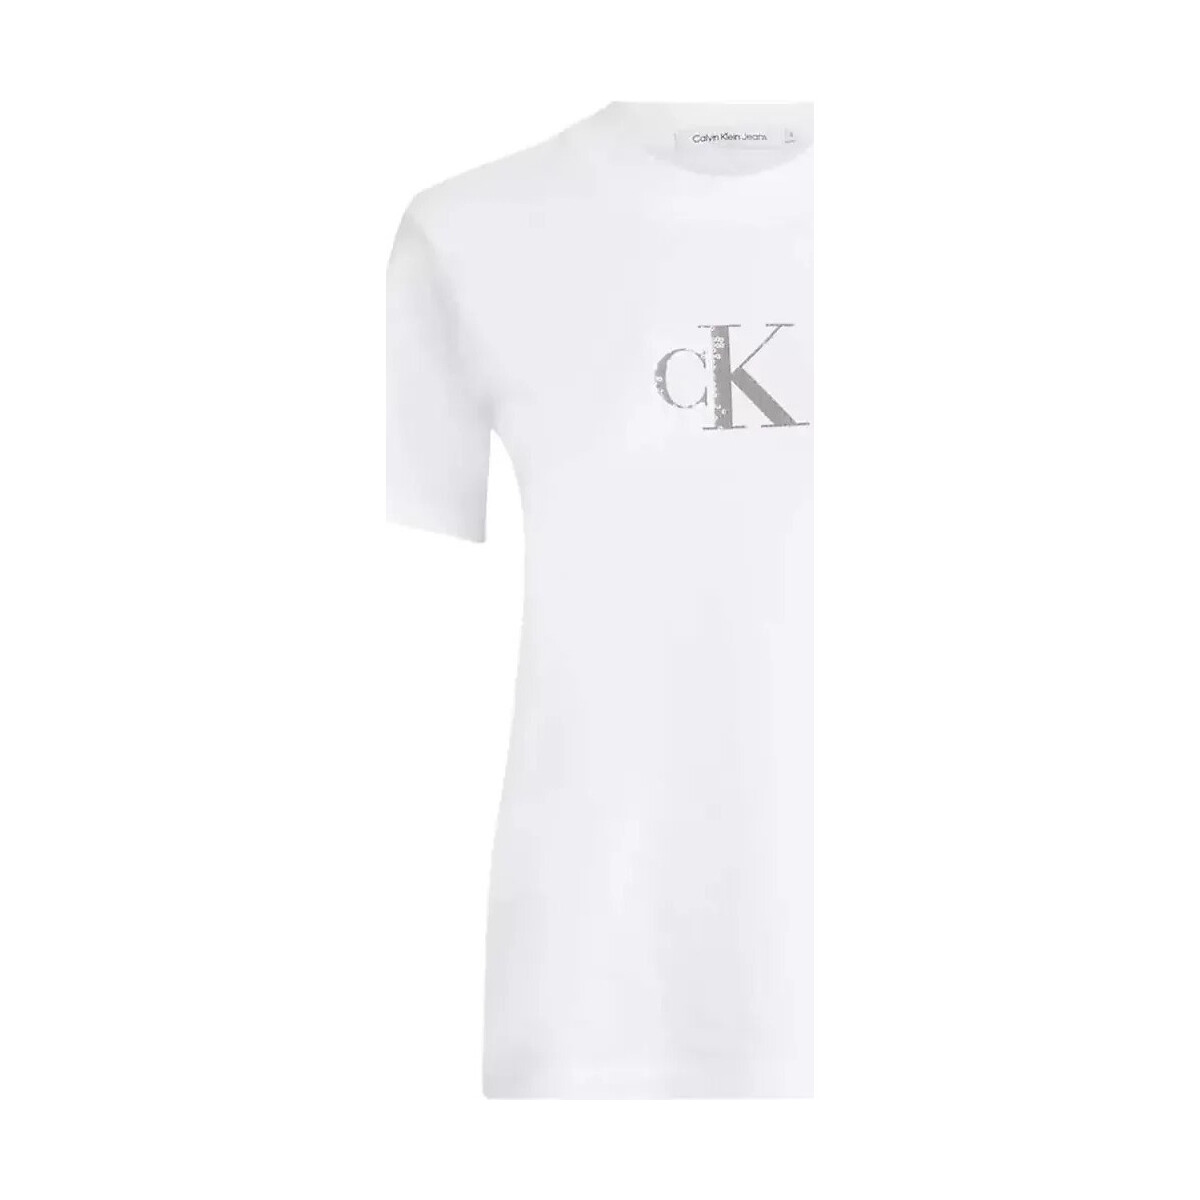 Vêtements Femme T-shirts manches courtes Calvin Klein Jeans Monogramme Blanc